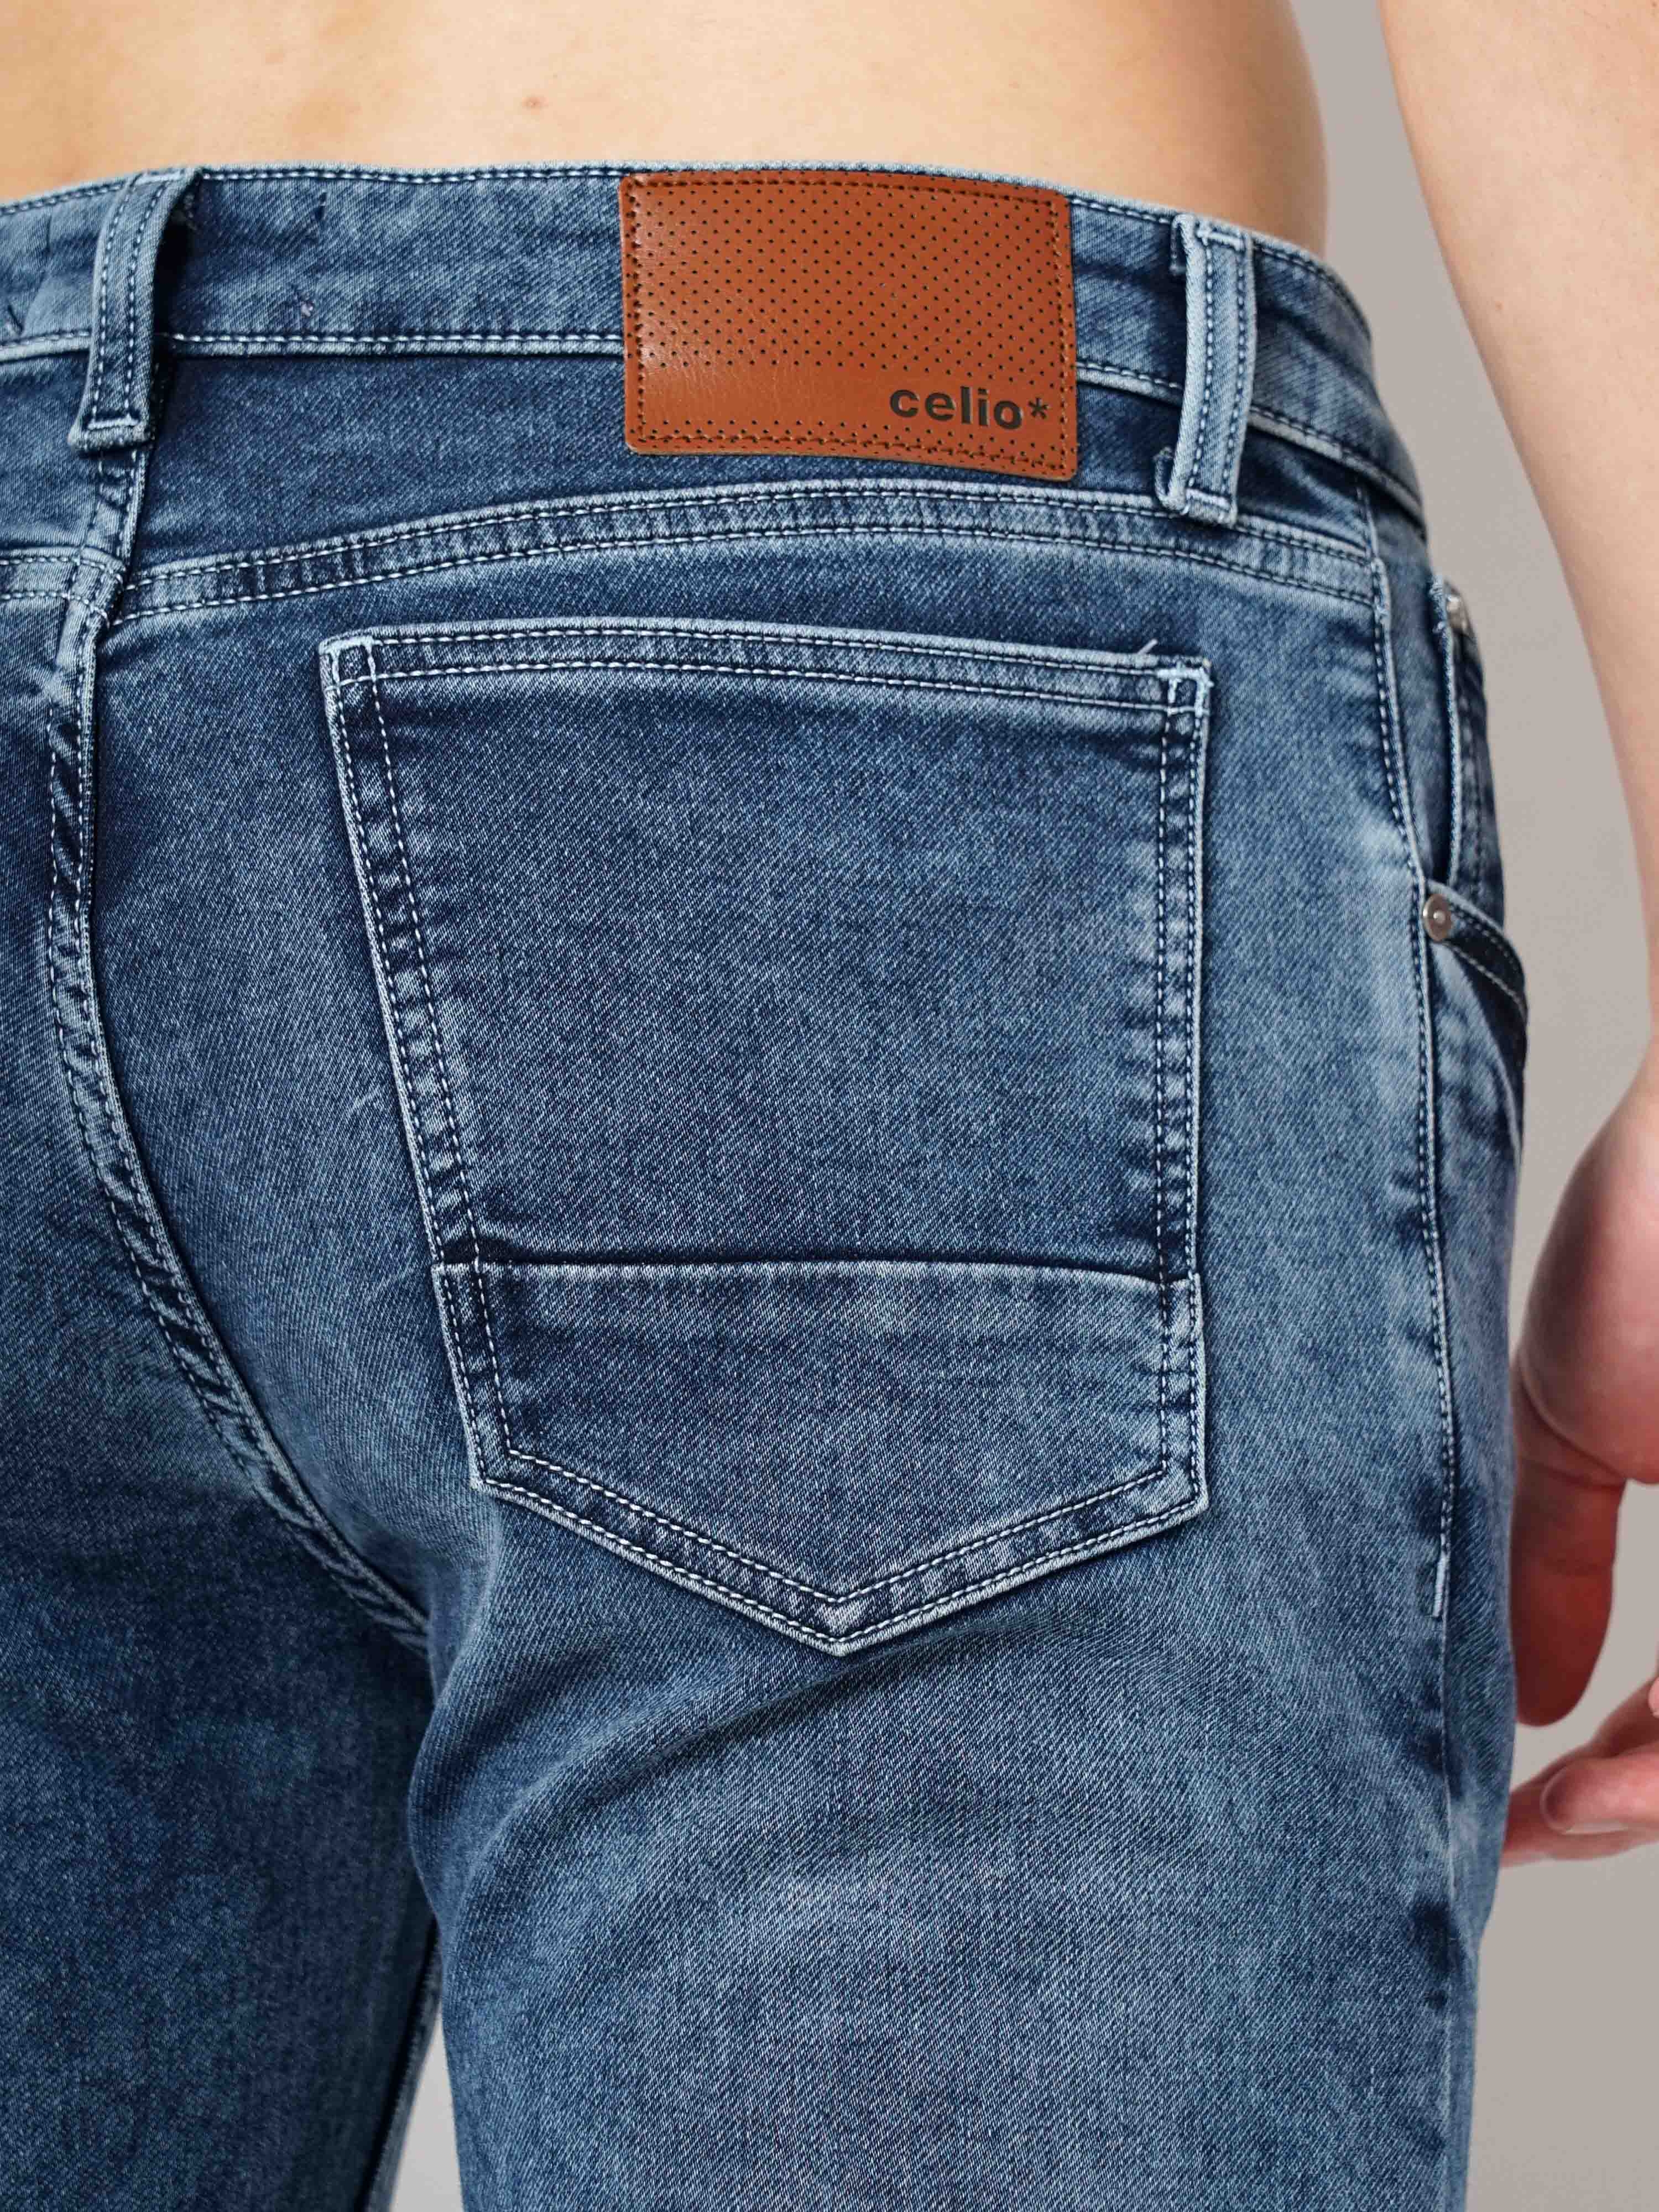 celio | Men's Solid Knit Denim Jeans 7